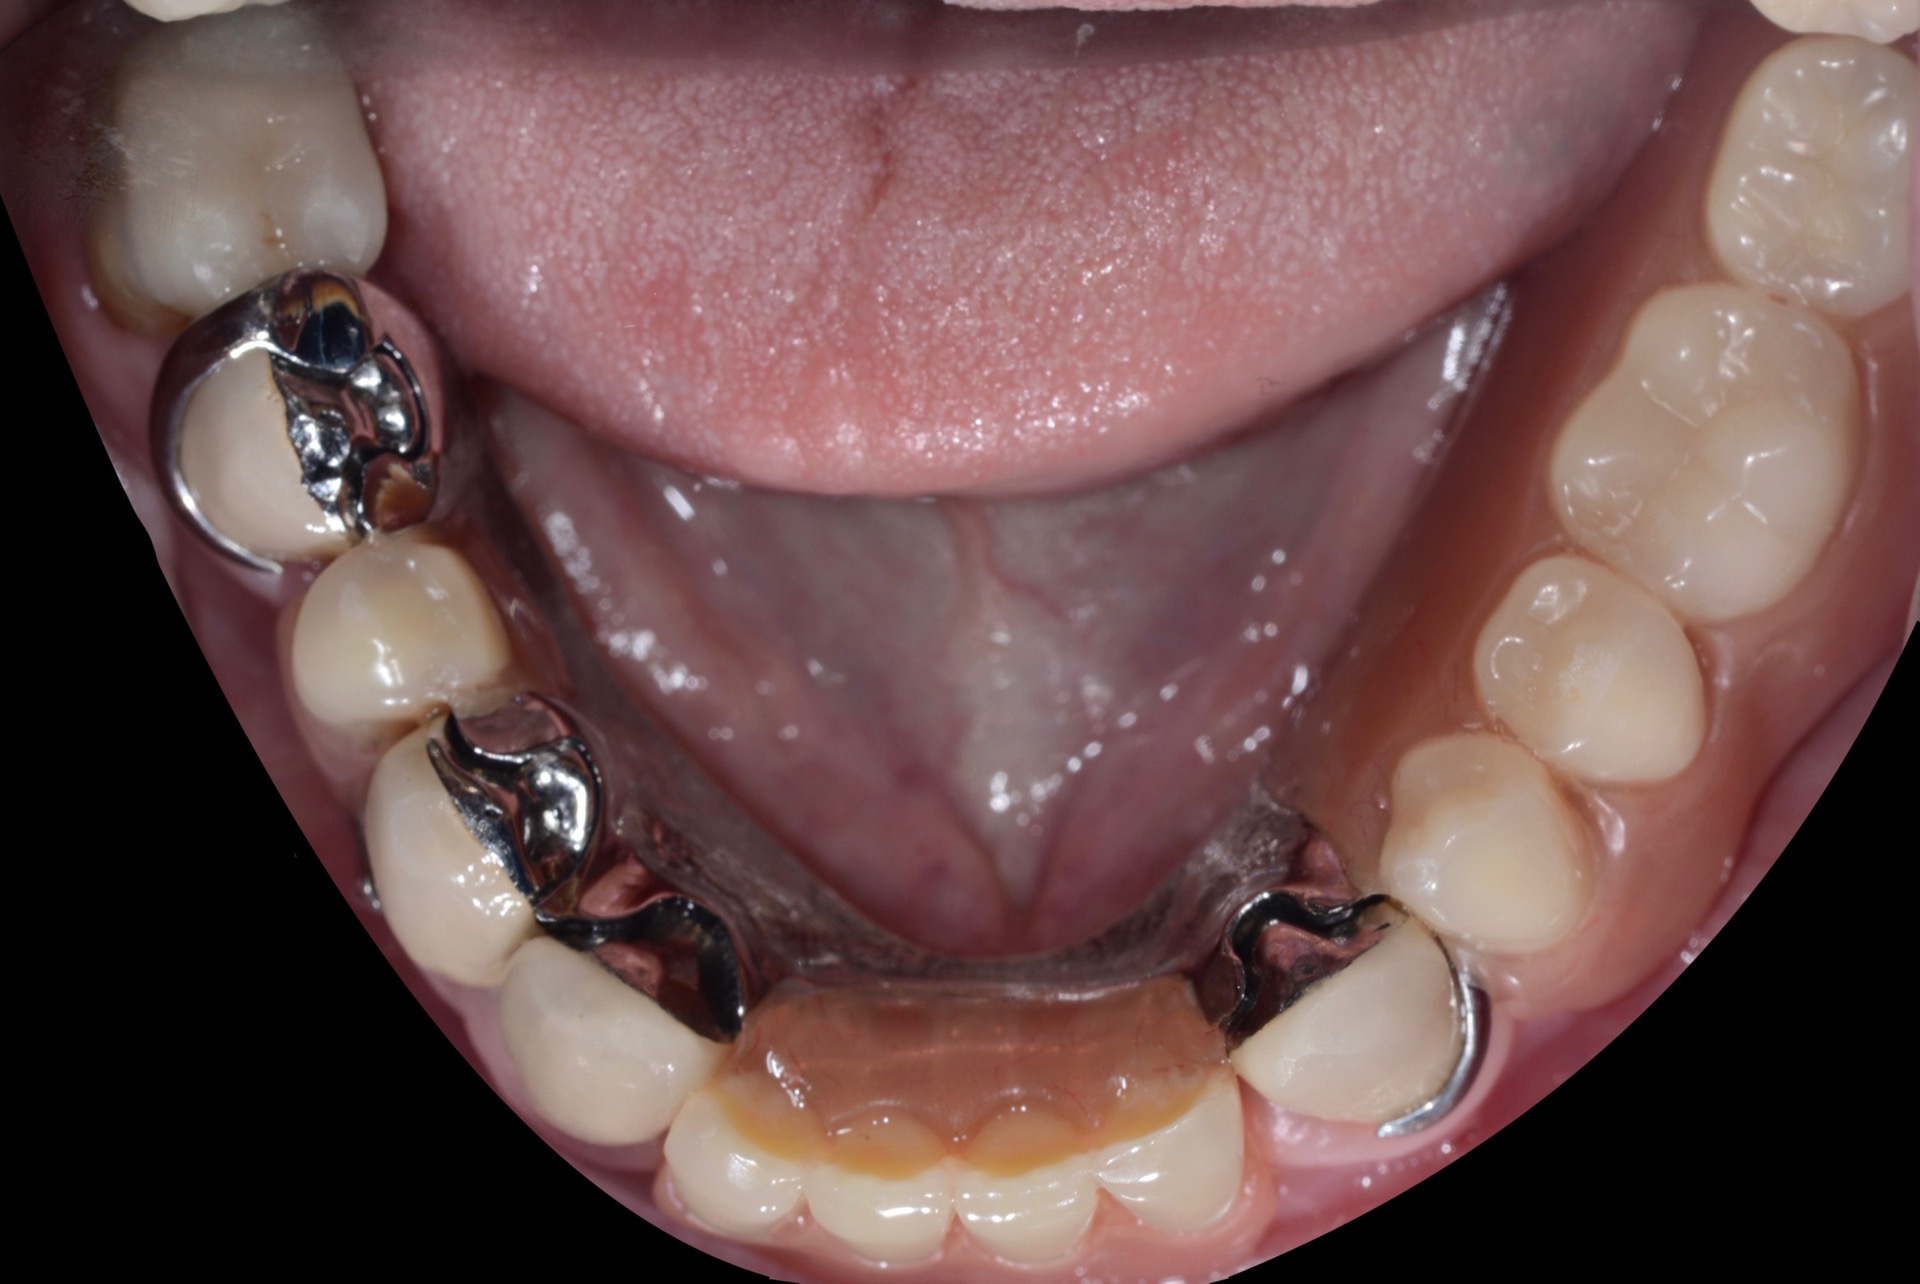 Τελική κατάσταση - Μασητική άποψη κάτω γνάθου (με την μερική οδοντοστοιχία τοποθετημένη